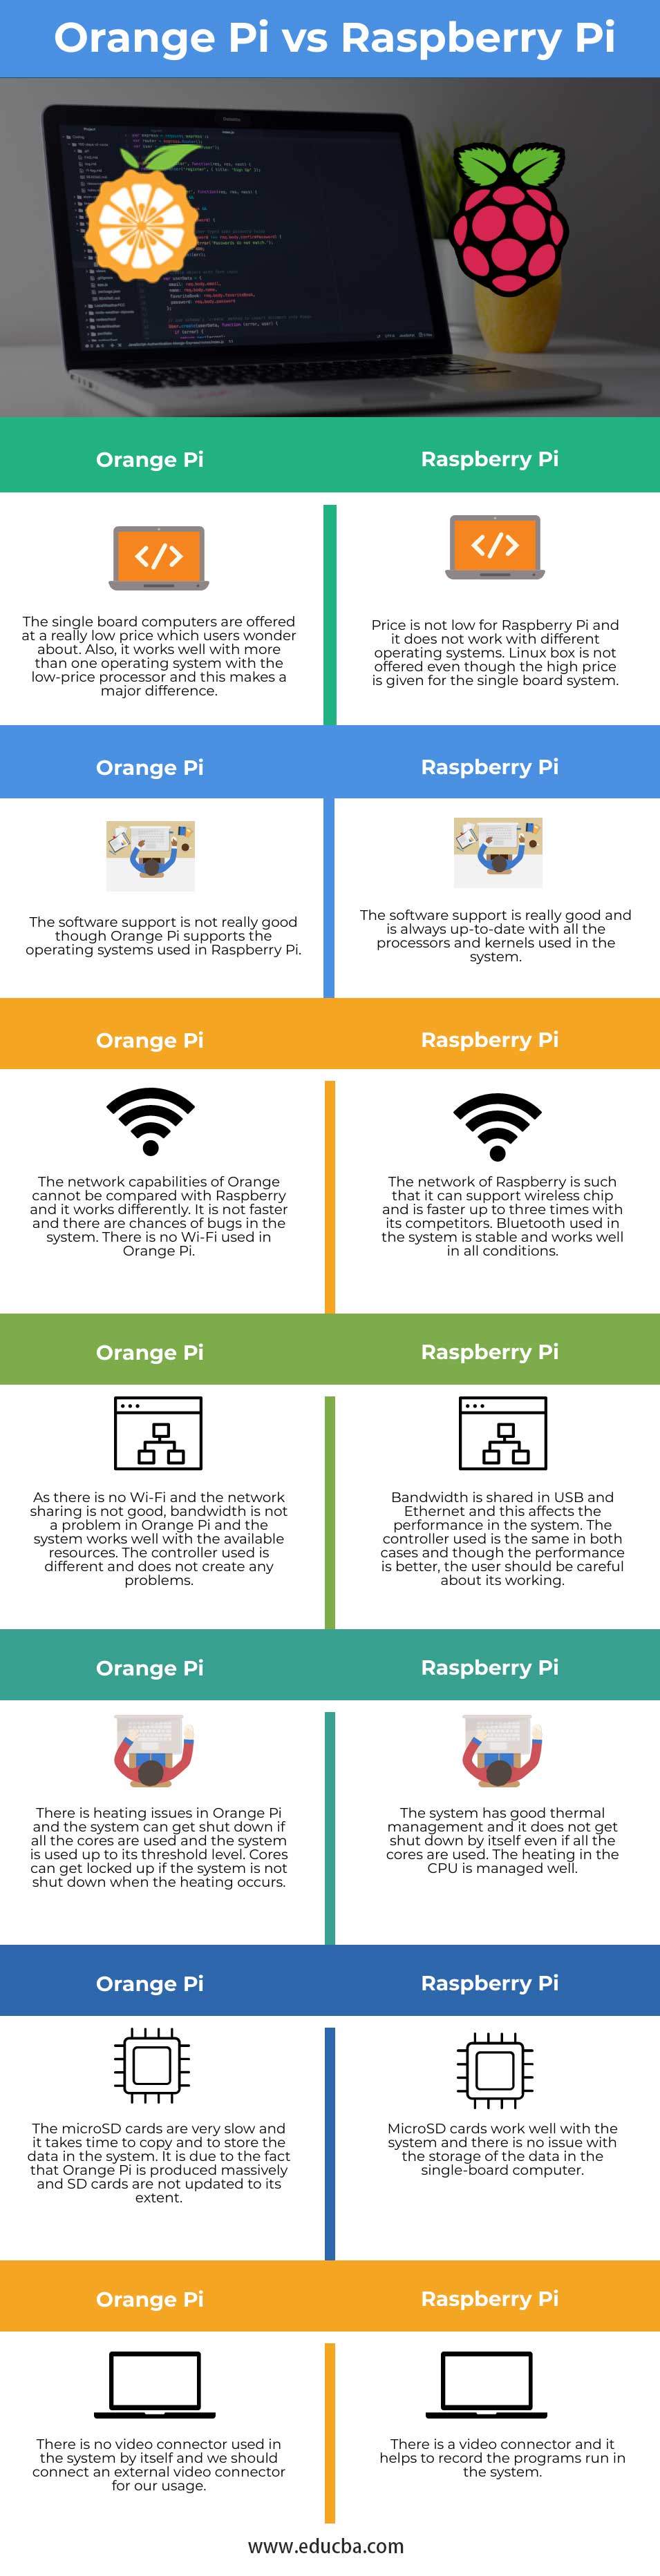 Orange-Pi-vs-Raspberry-Pi-info